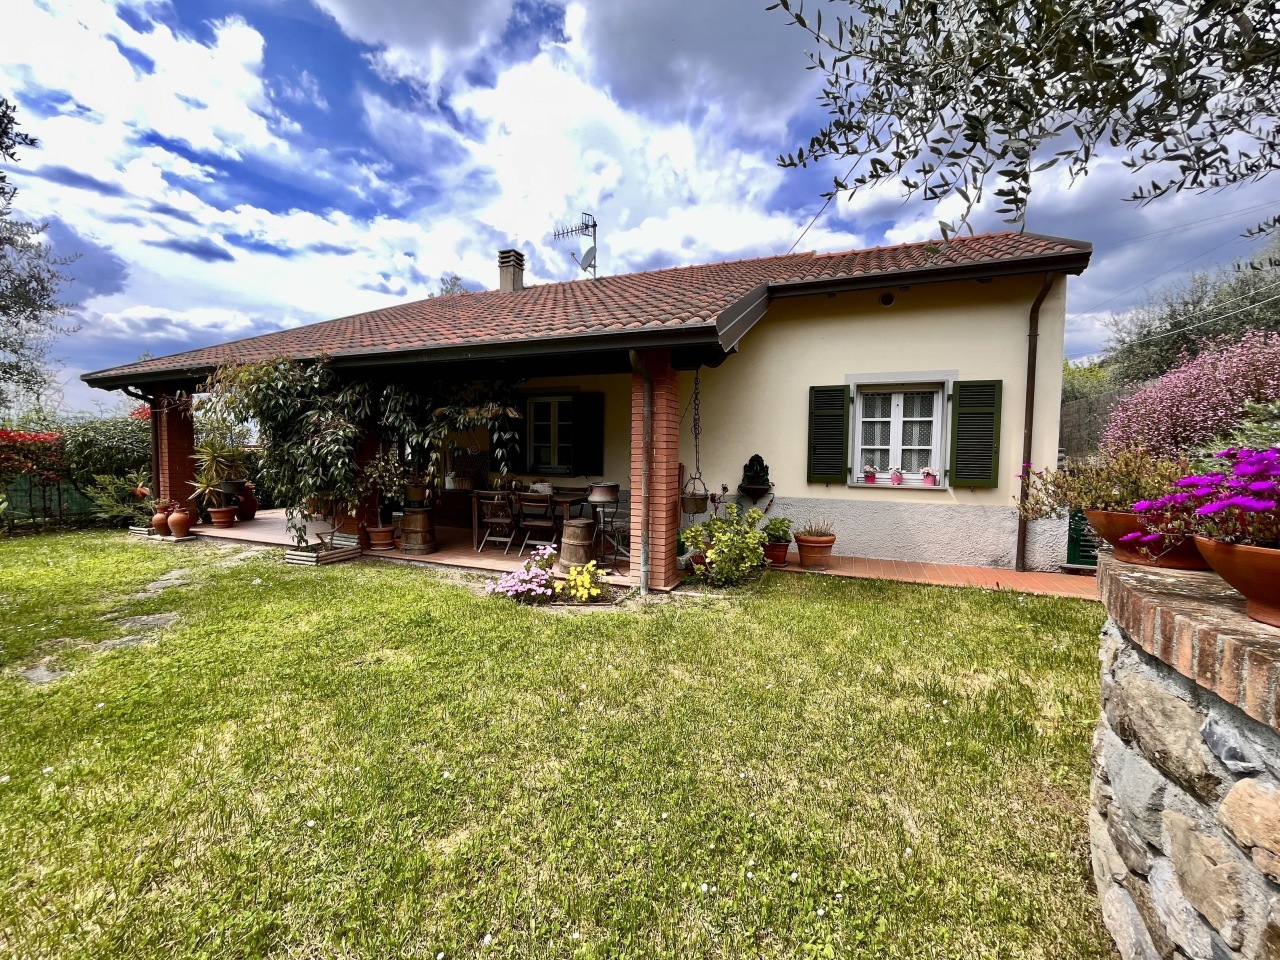 Villa in vendita a Aulla, 7 locali, prezzo € 310.000 | PortaleAgenzieImmobiliari.it